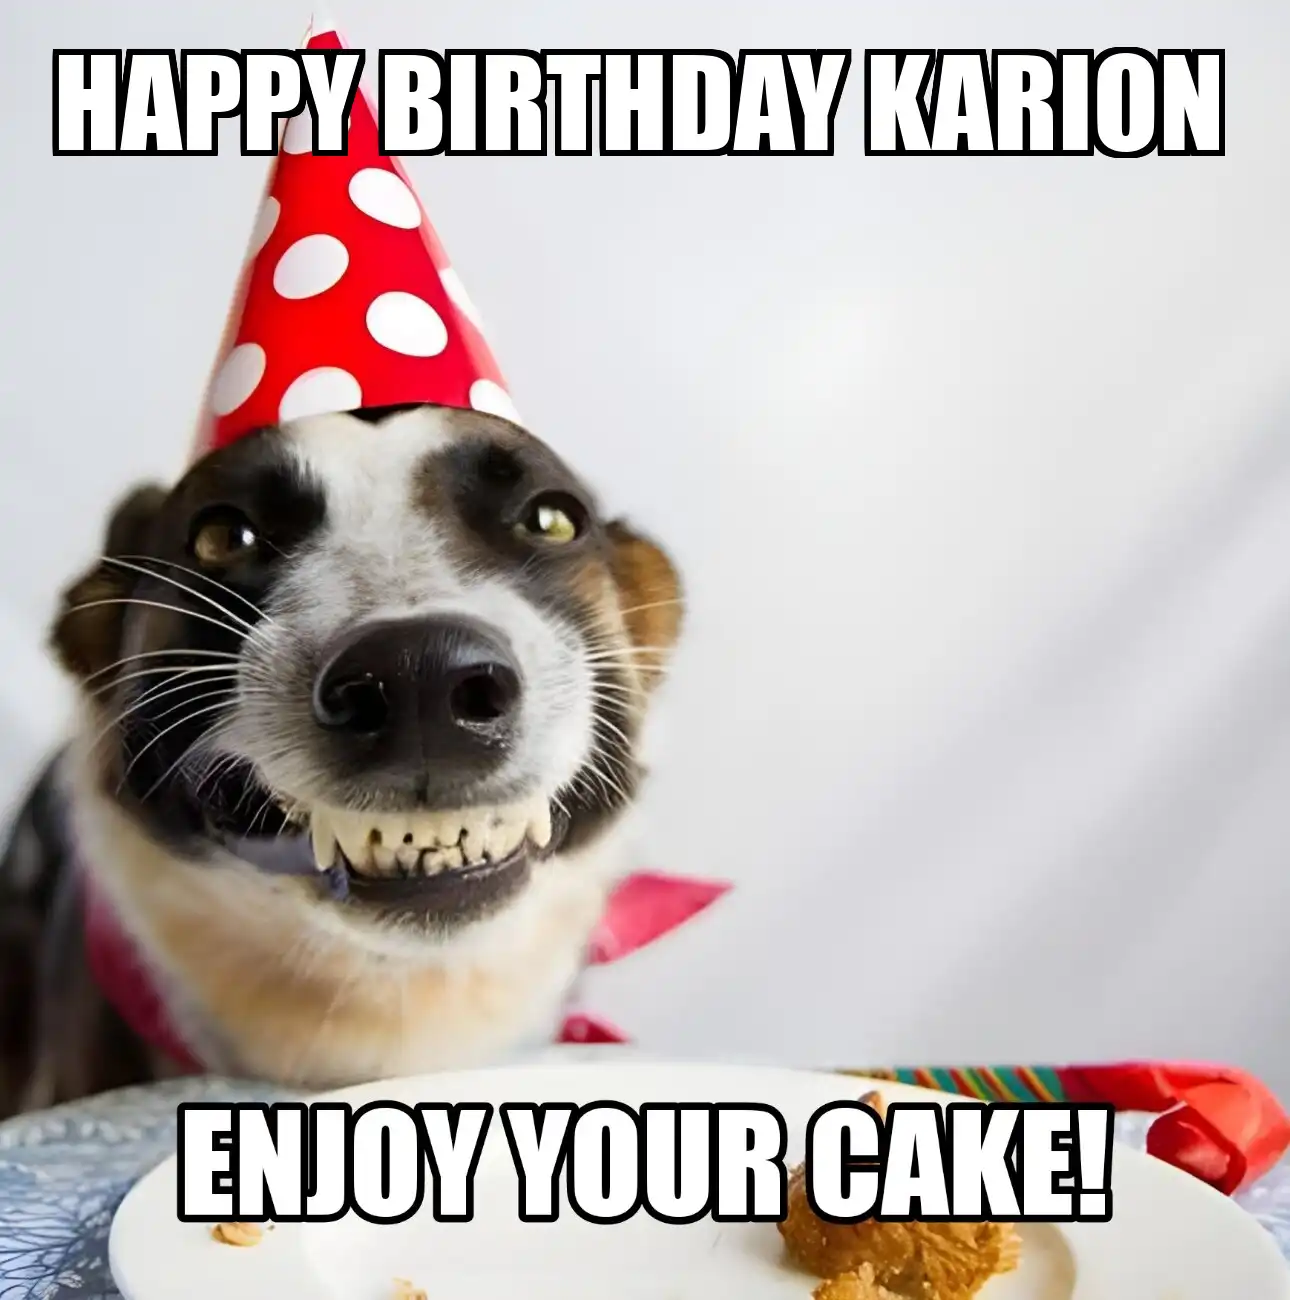 Happy Birthday Karion Enjoy Your Cake Dog Meme